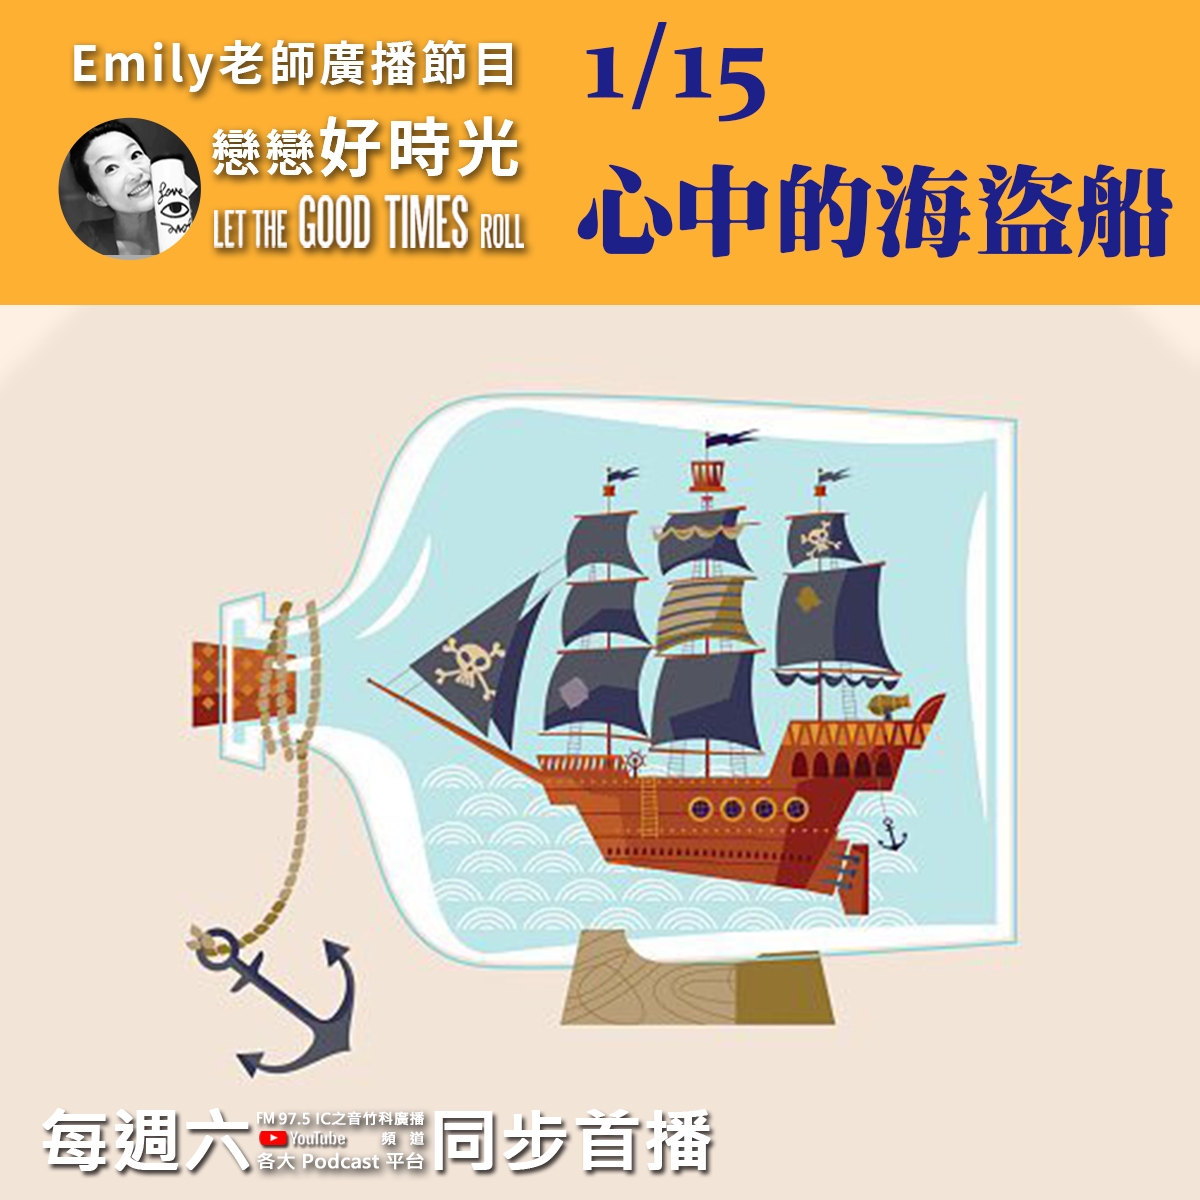 Emily老師「戀戀好時光」節目-2022/1/15-心中的海盜船